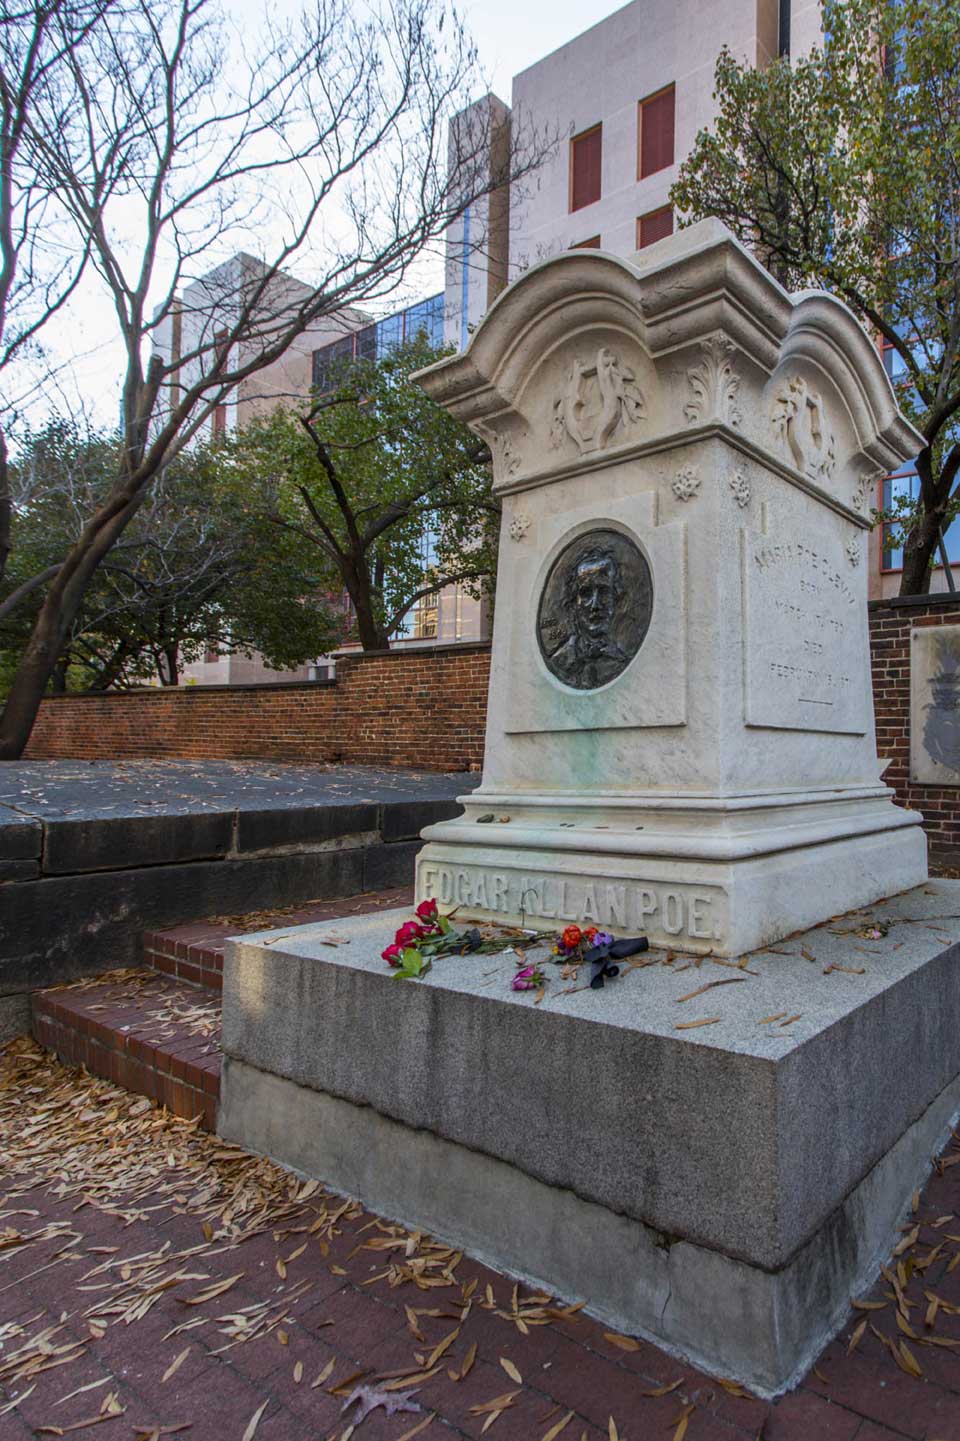 Edgar Allen Poe monument in Baltimore, MD